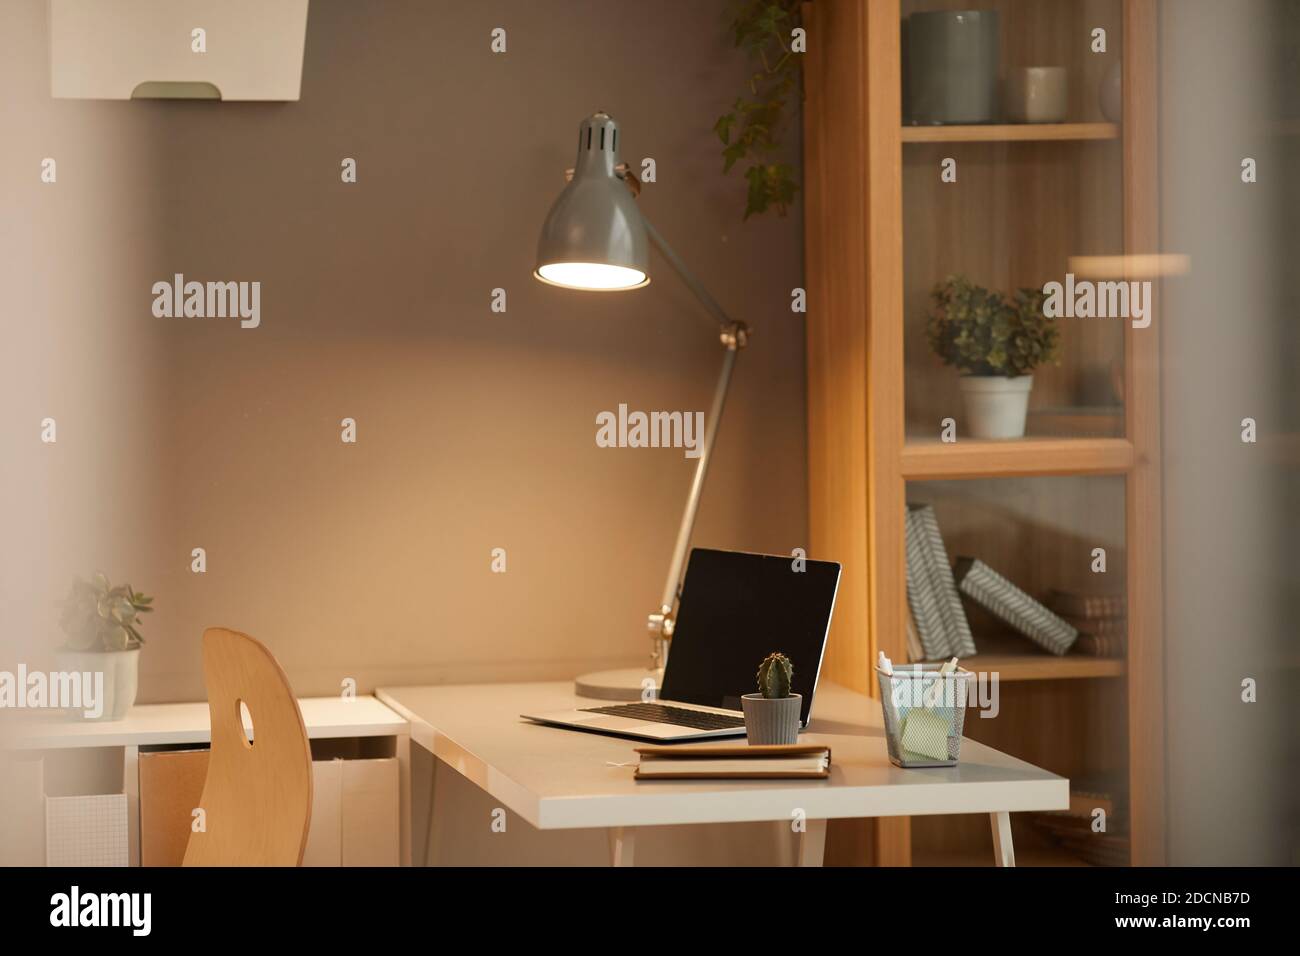 Image d'arrière-plan d'un espace de travail confortable à la maison avec lampe de bureau éclairée dans un design minimal, espace de copie Banque D'Images